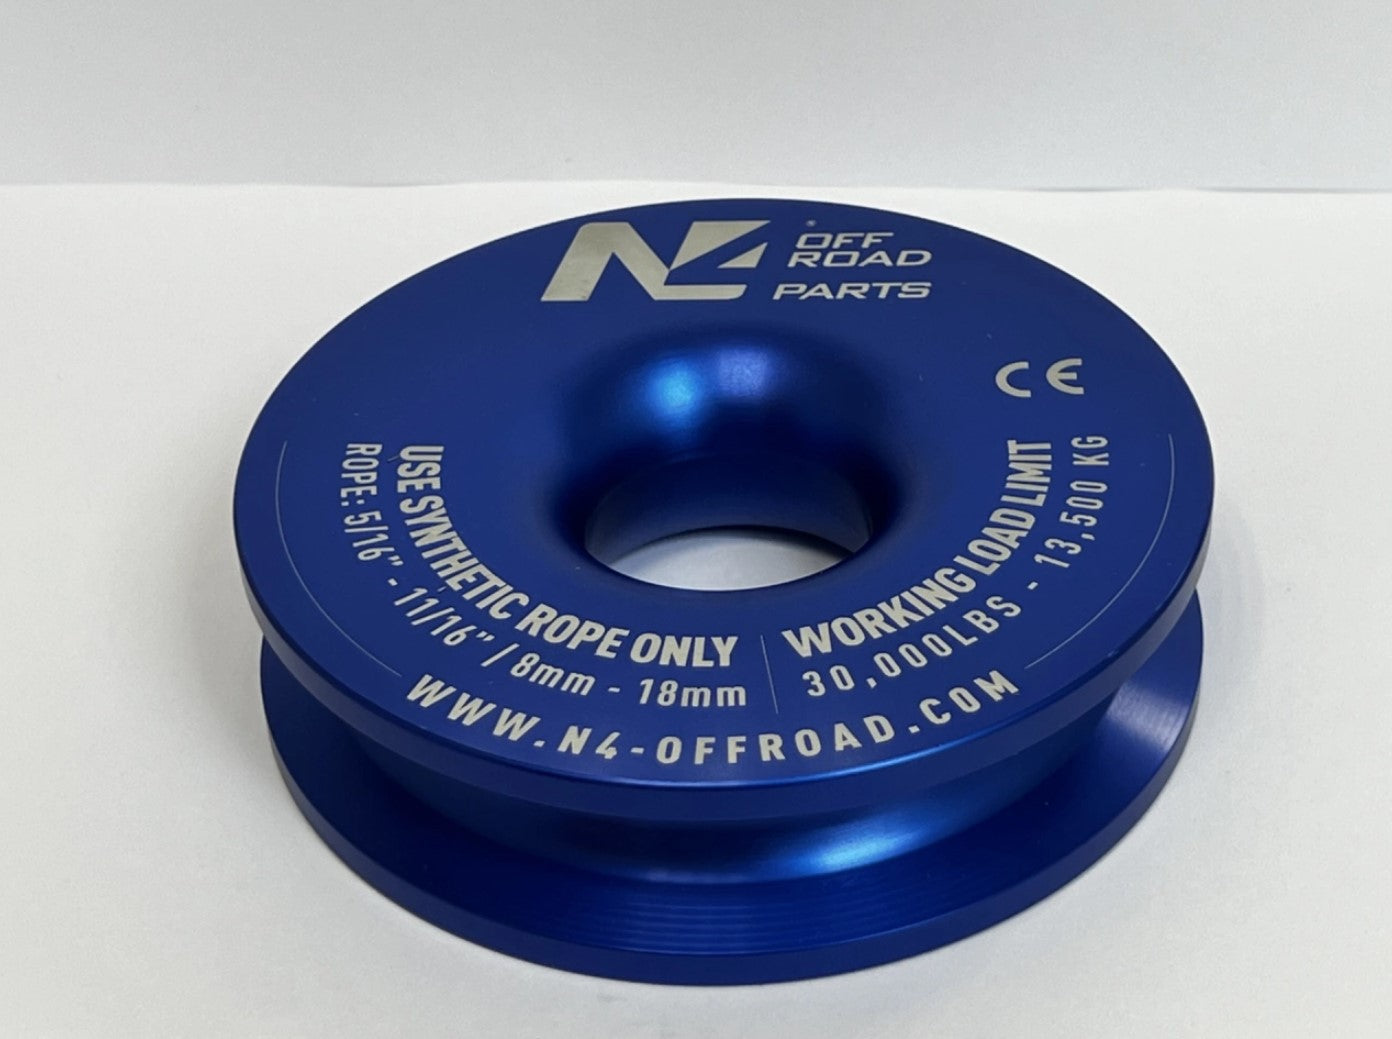 N4 Offroad anillo azul para aumentar la potencia del cabrestante